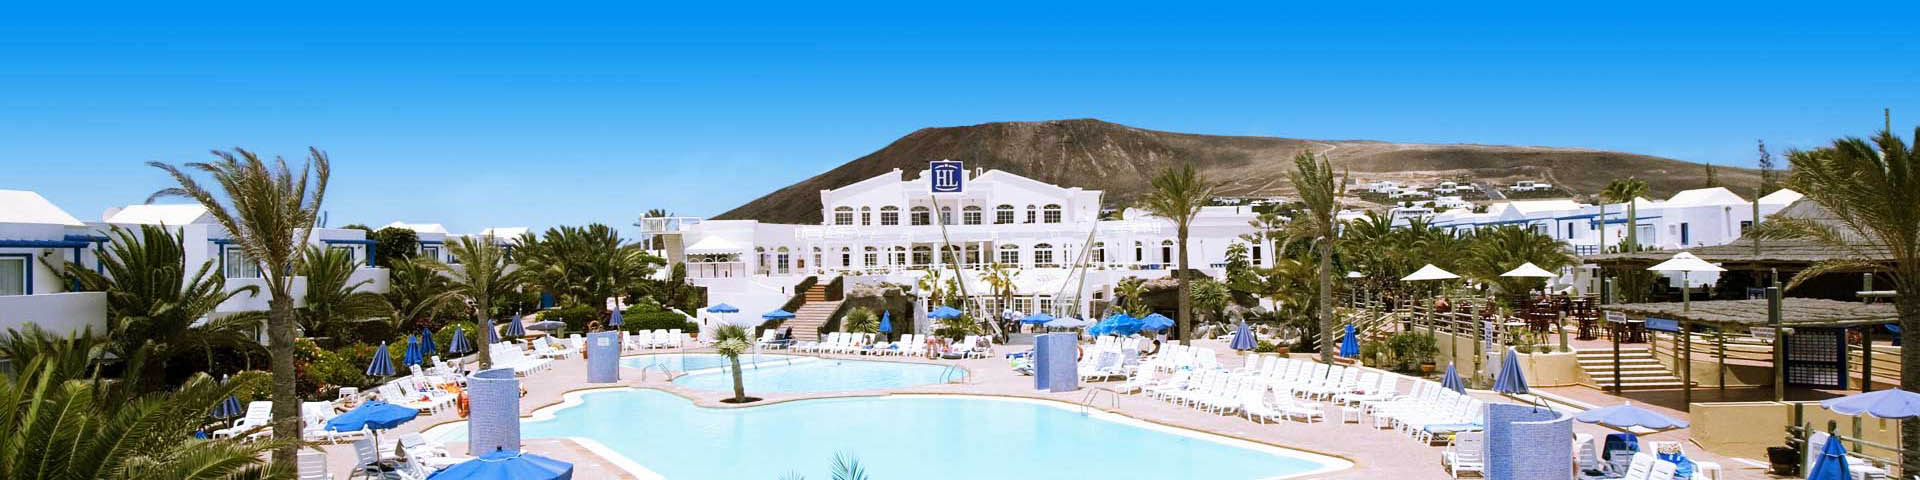 Hotelgebouw van hotelketen HL met uitzicht op het zwembad en een berg